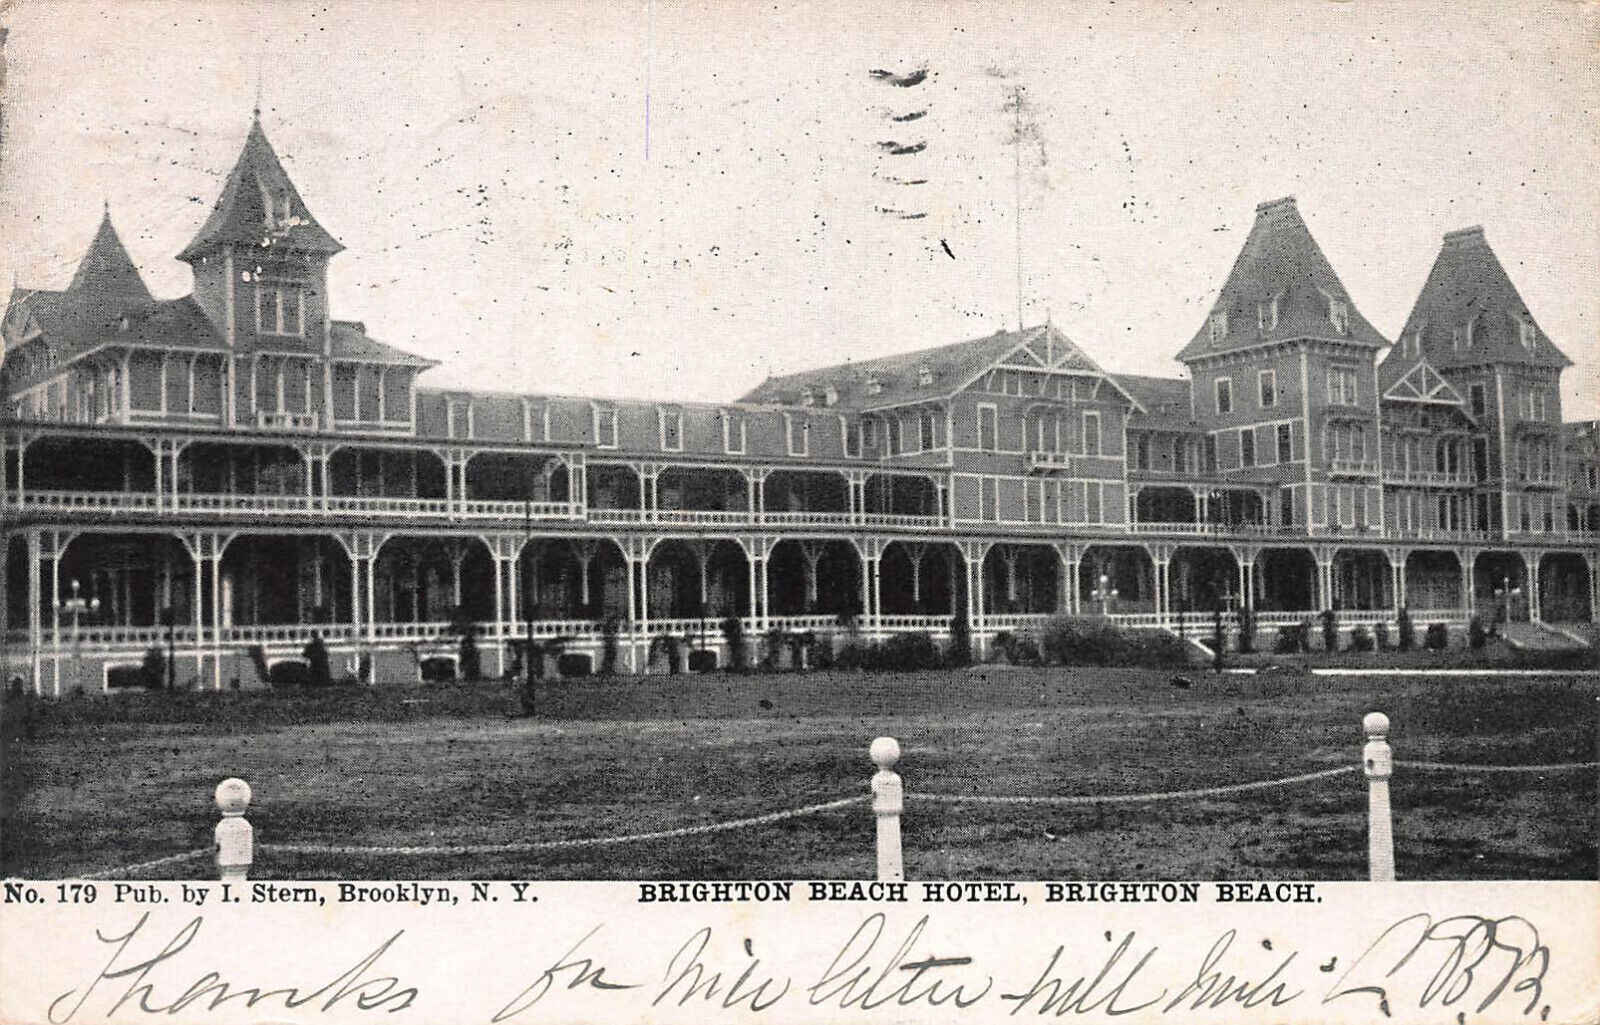 Brighton Beach Hotel, Brighton Beach, Brooklyn, New York, Postcard, Used in 1906